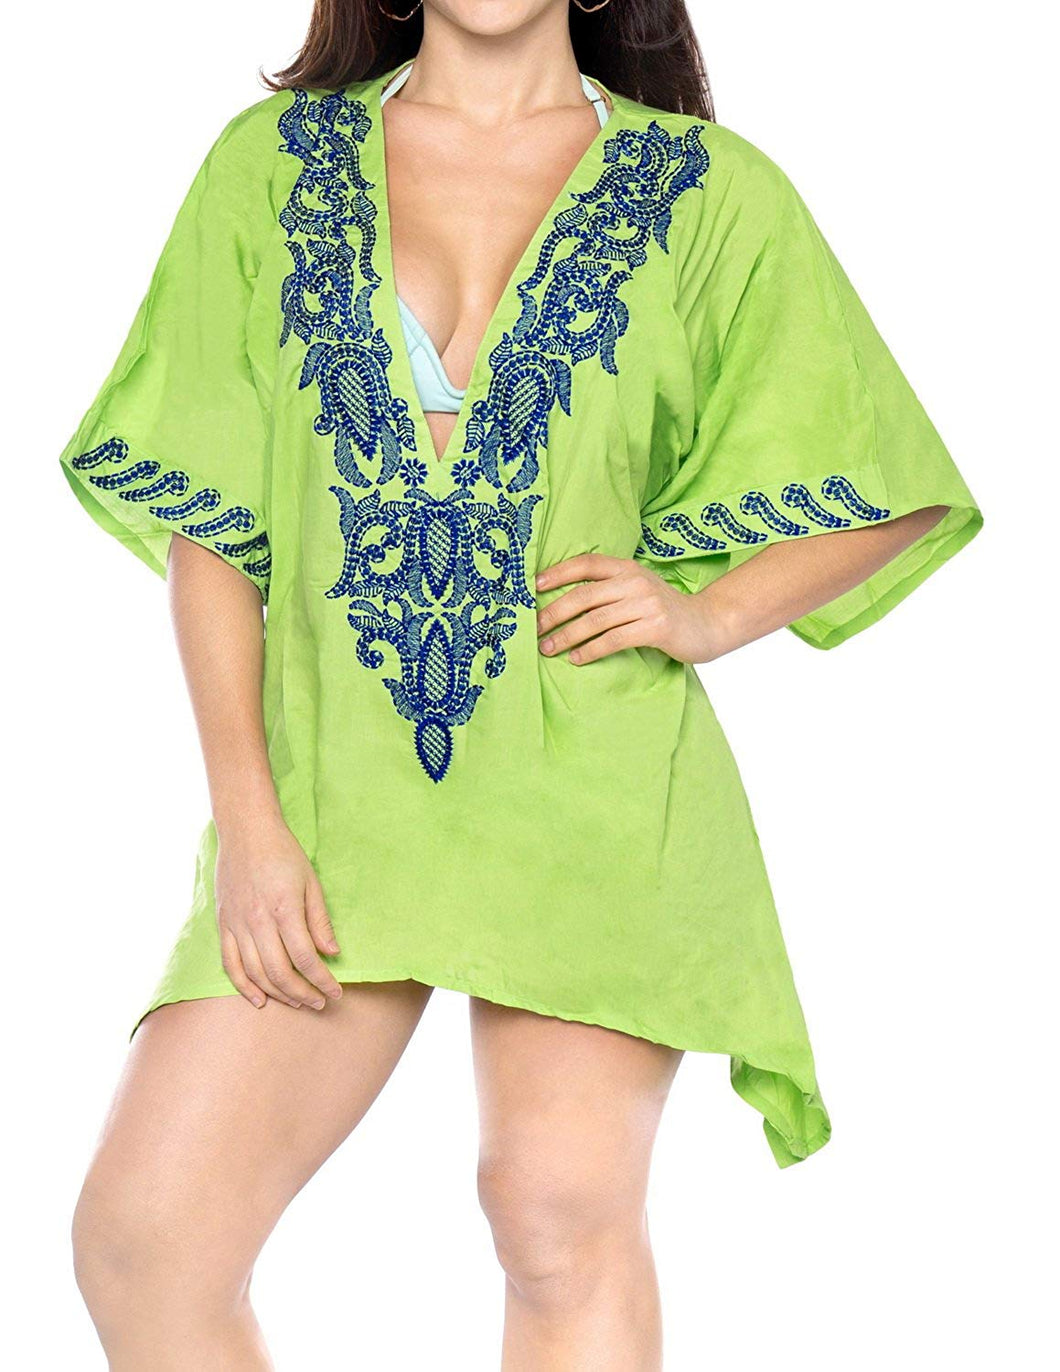 la-leela-bikini-swim-wear-swimsuit-beach-cover-ups-women-summer-dress-embroidery